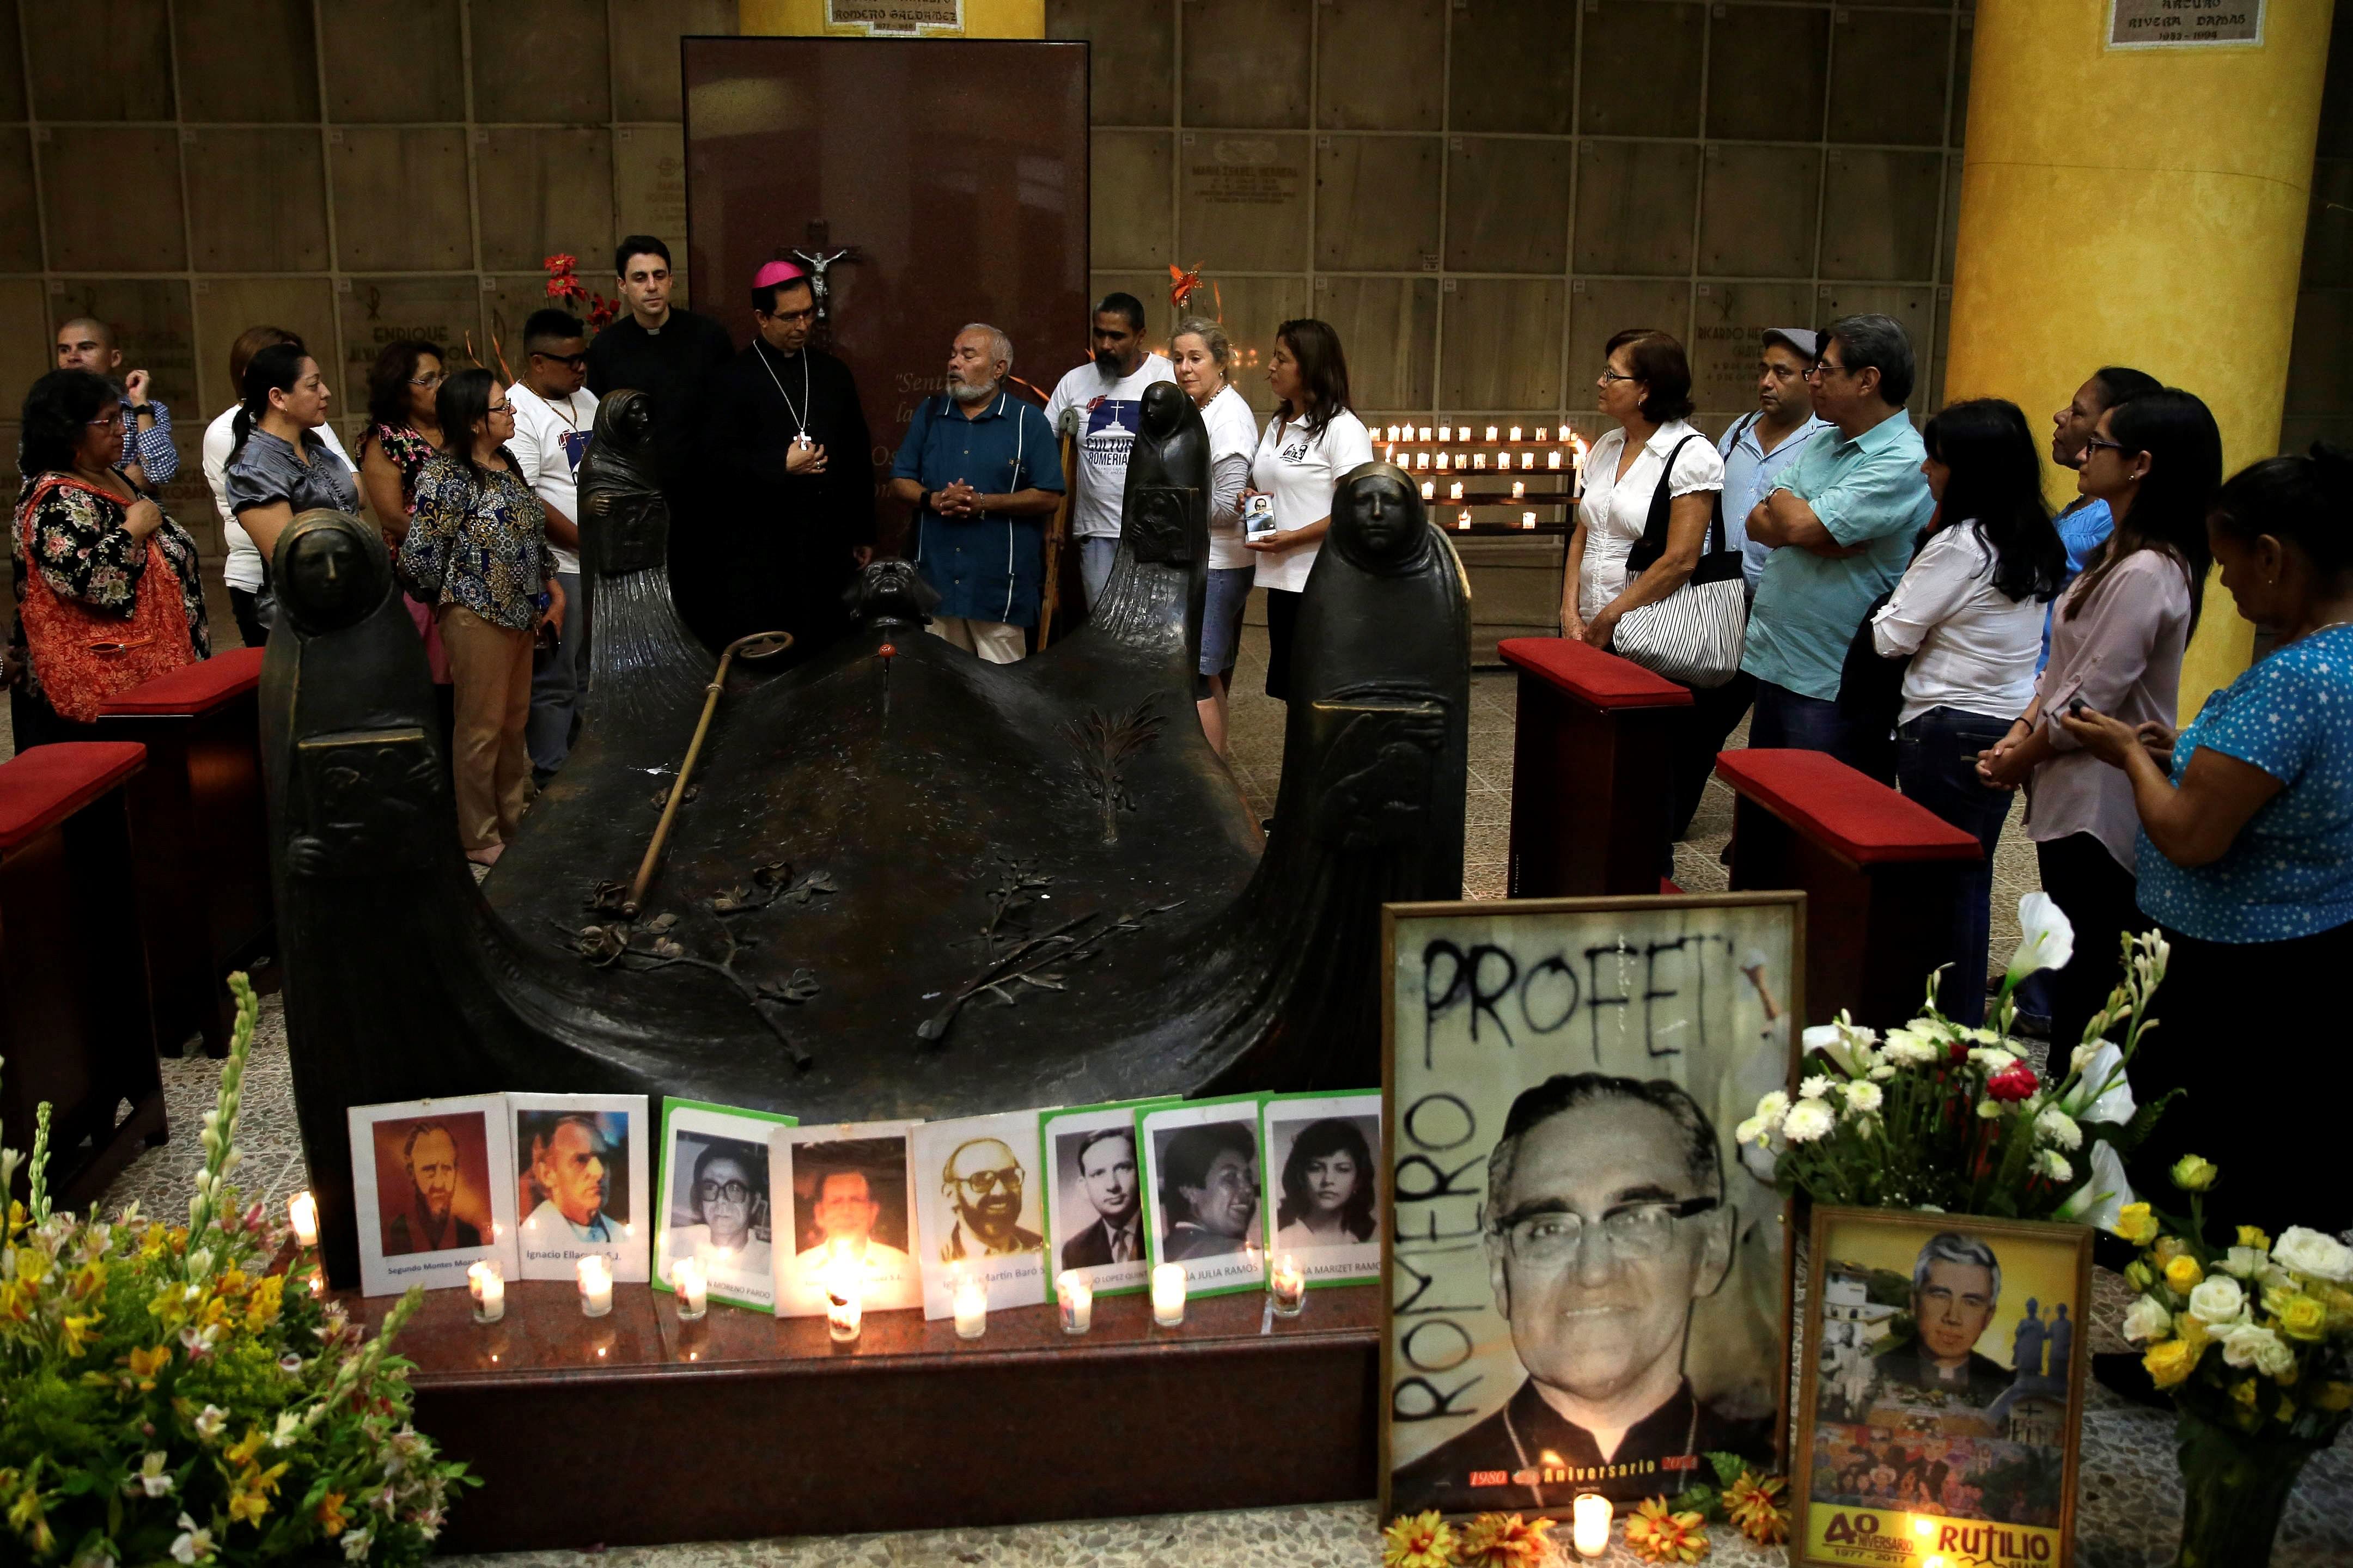 El beato Romero falleció el 24 de marzo de 1980 tras ser asesinado por un francotirador.